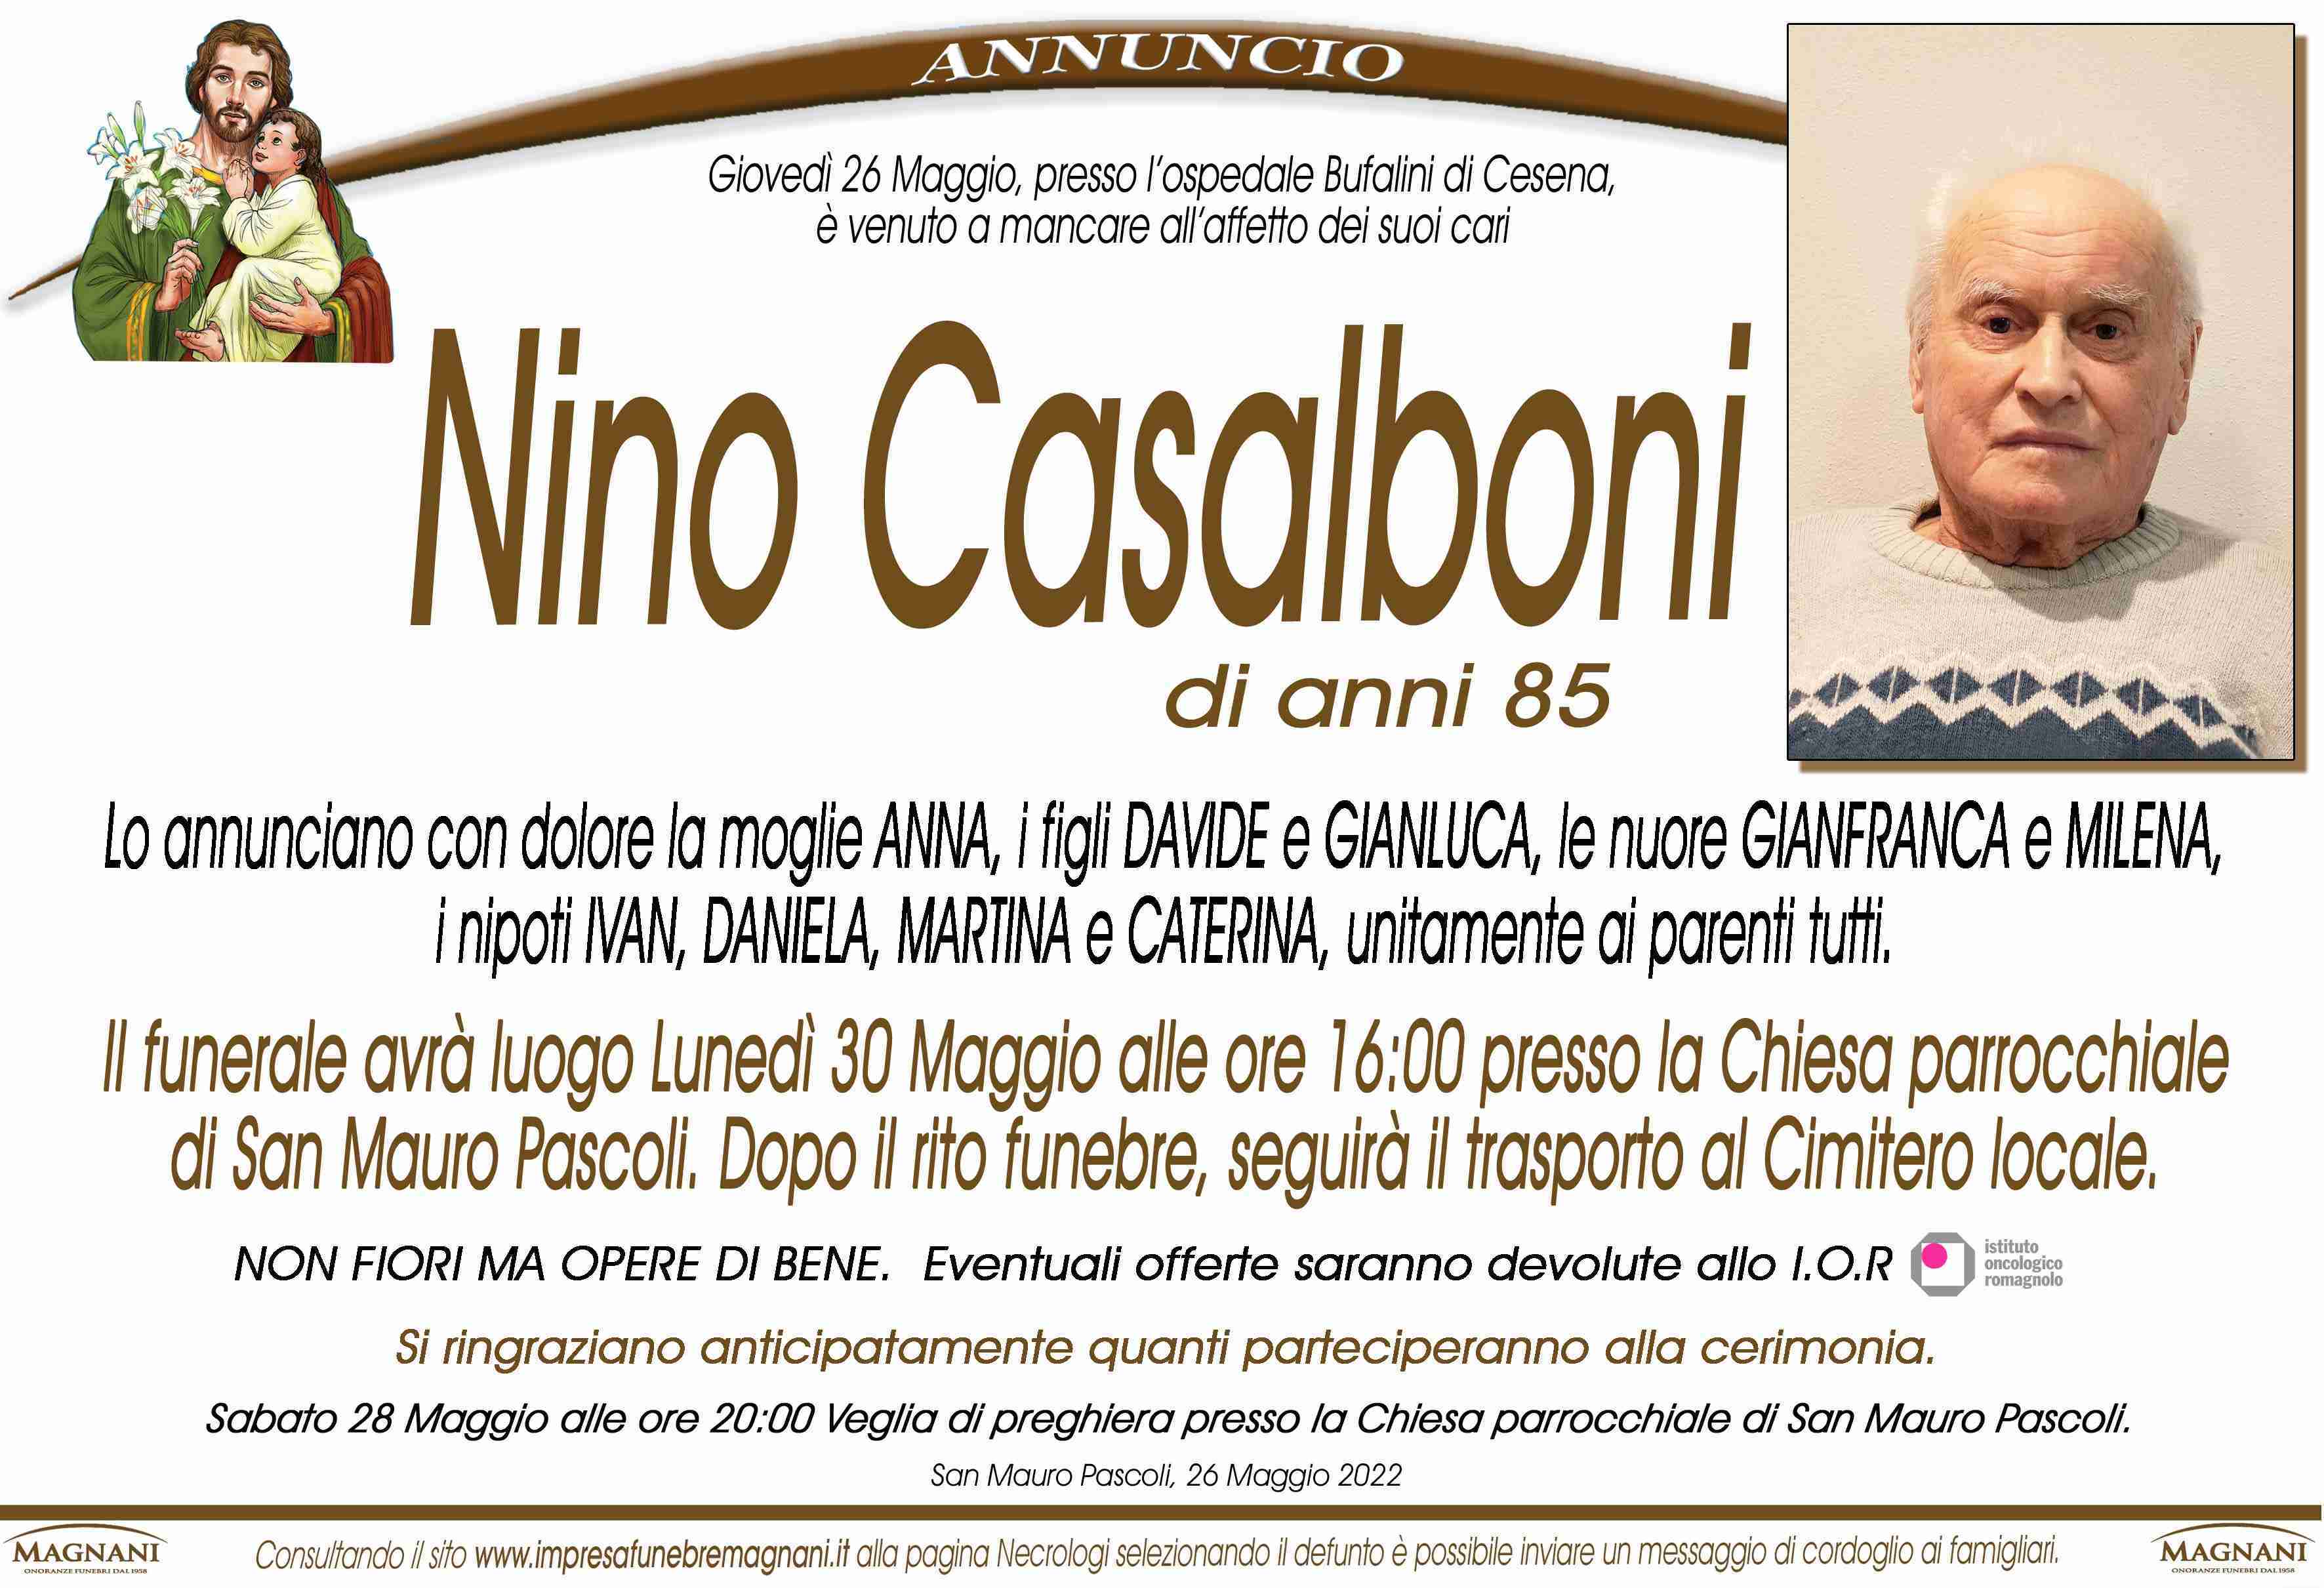 Nino Casalboni